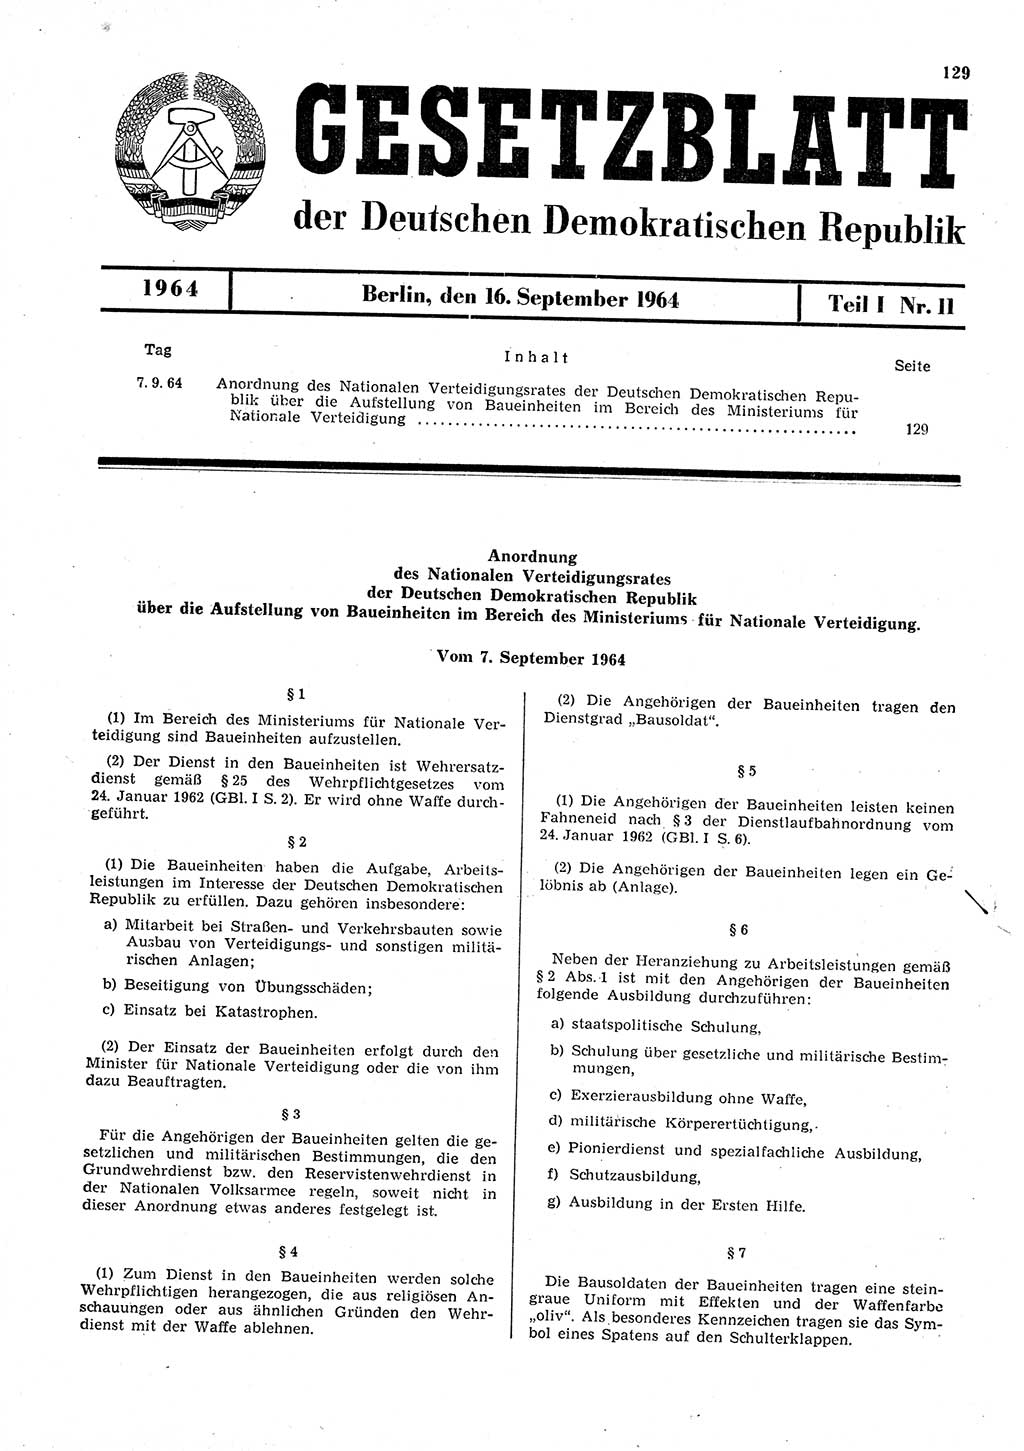 Gesetzblatt (GBl.) der Deutschen Demokratischen Republik (DDR) Teil Ⅰ 1964, Seite 129 (GBl. DDR Ⅰ 1964, S. 129)